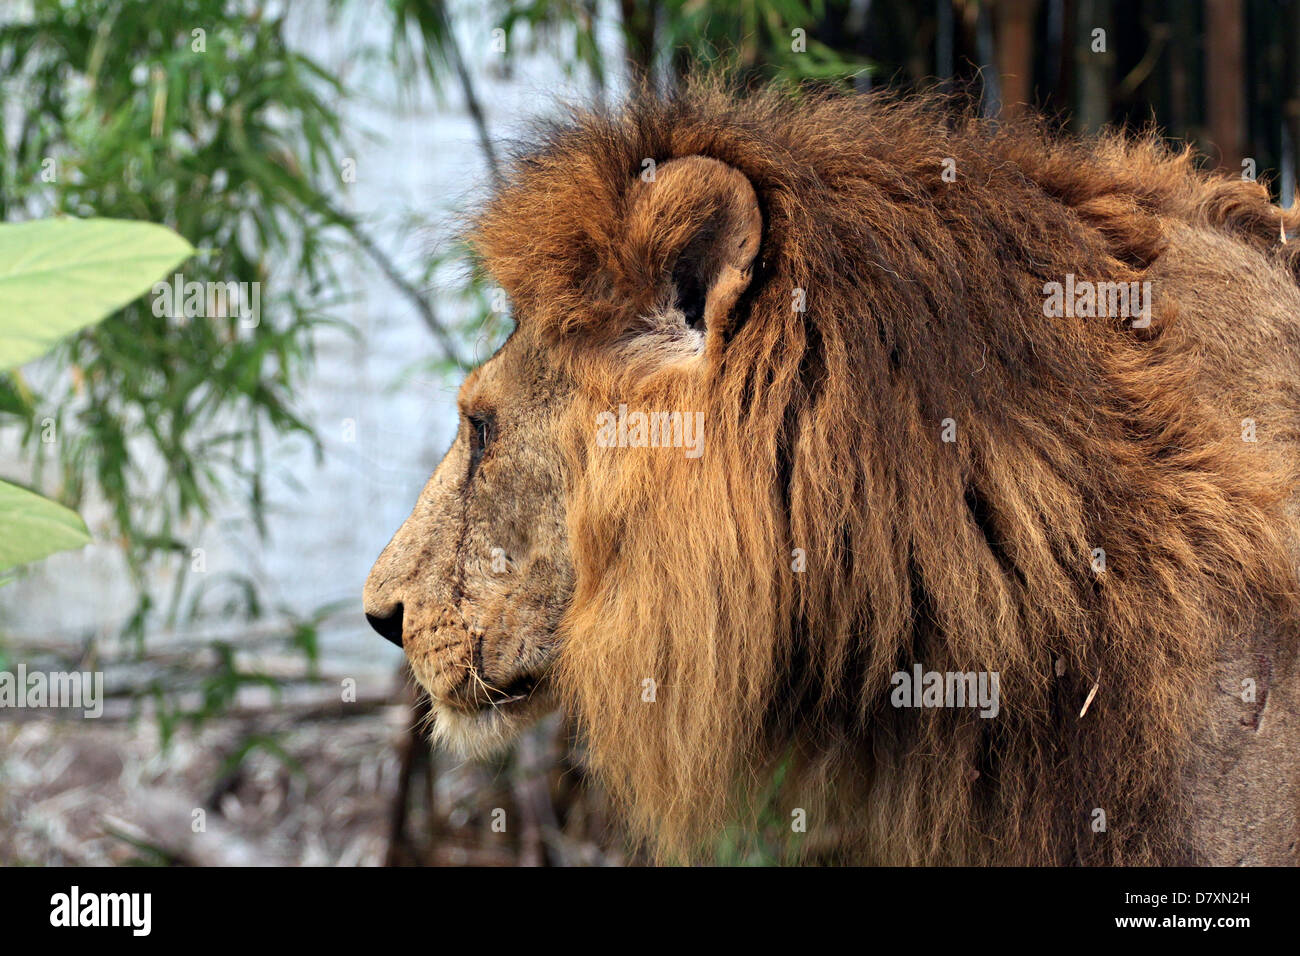 Lato del vecchio leone in cerca di cibo nella foresta. Foto Stock